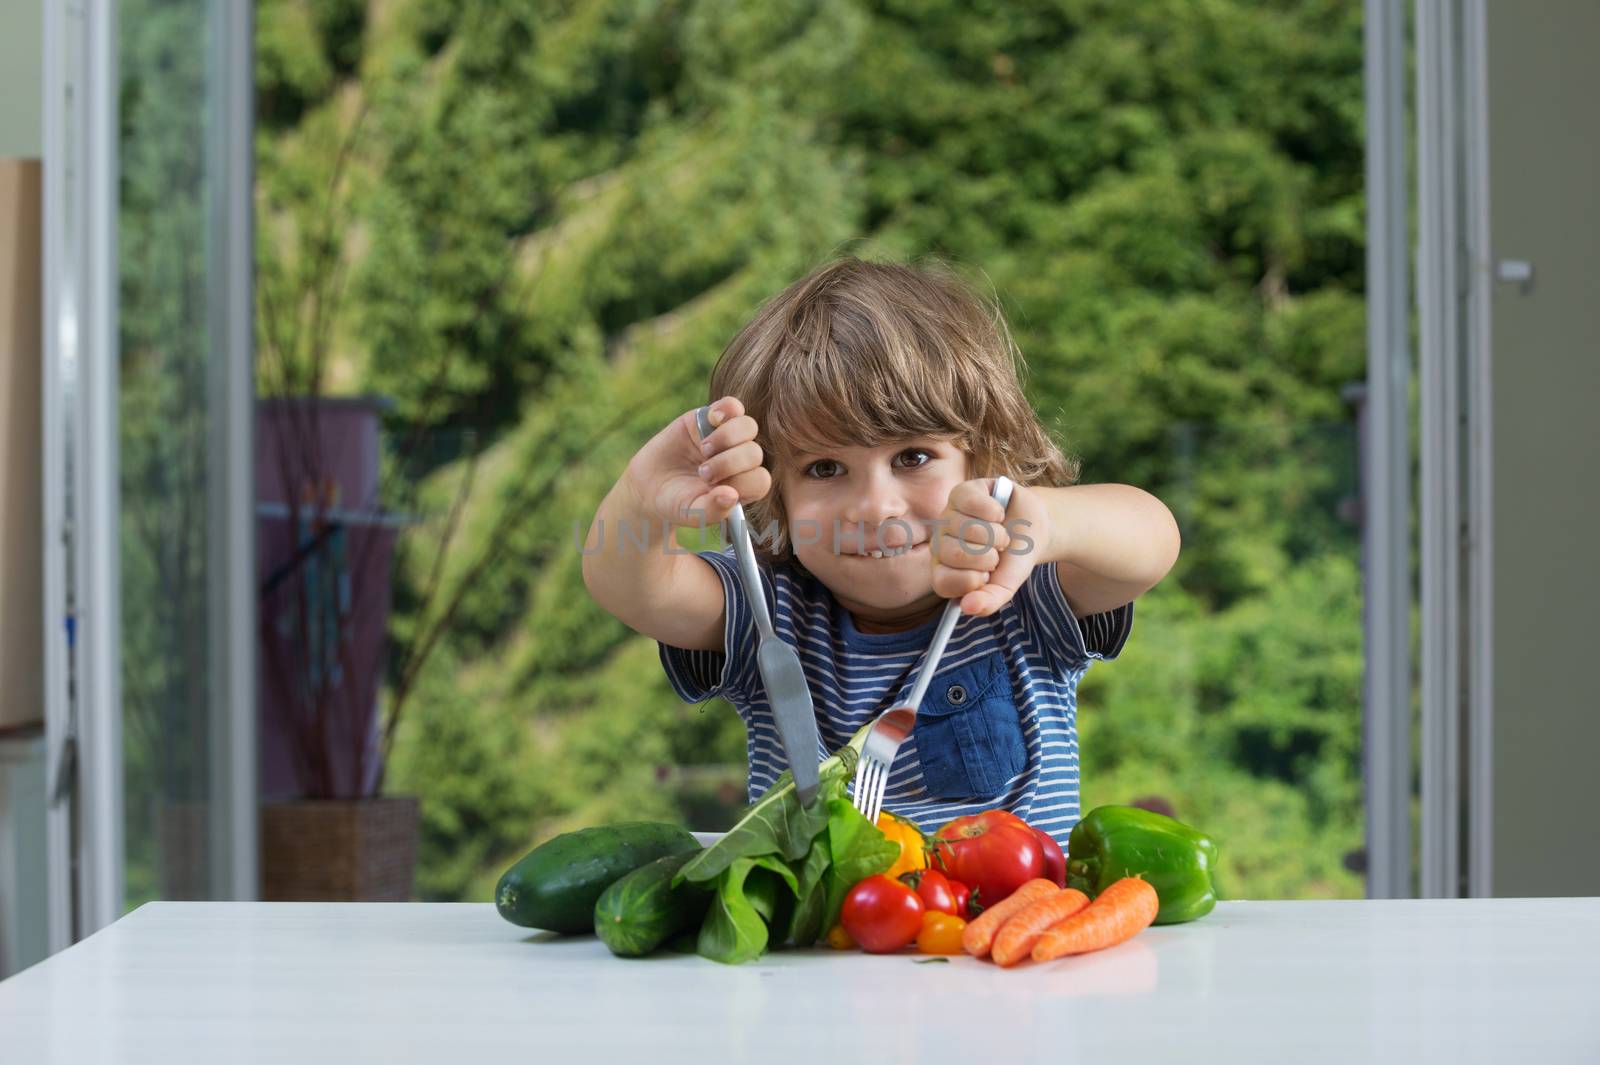 Little boy vegetable meal by kaliantye